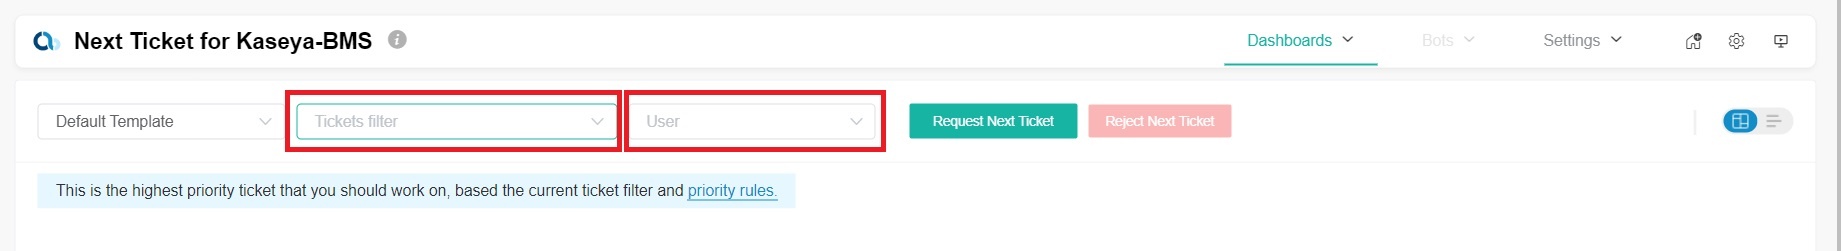 NextTicket Kaseya Tickets_User filters